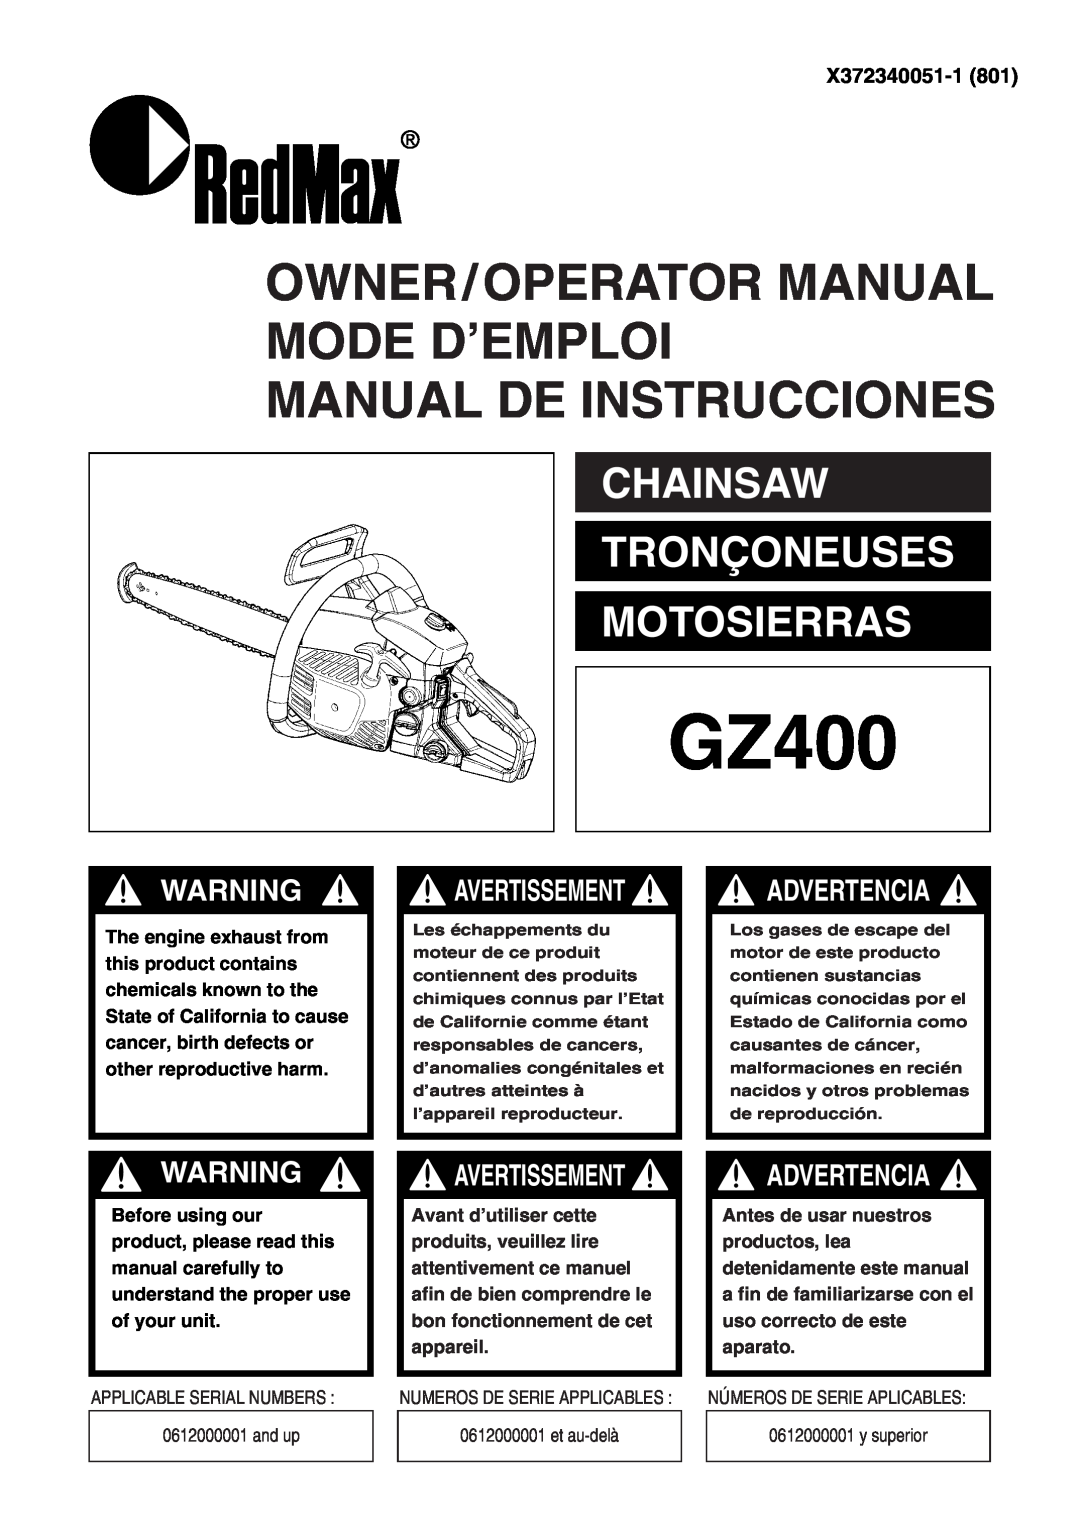 RedMax GZ400 manual X372340051-1, Owner/Operator Manual Mode D’Emploi Manual De Instrucciones, Advertencia, Avertissement 